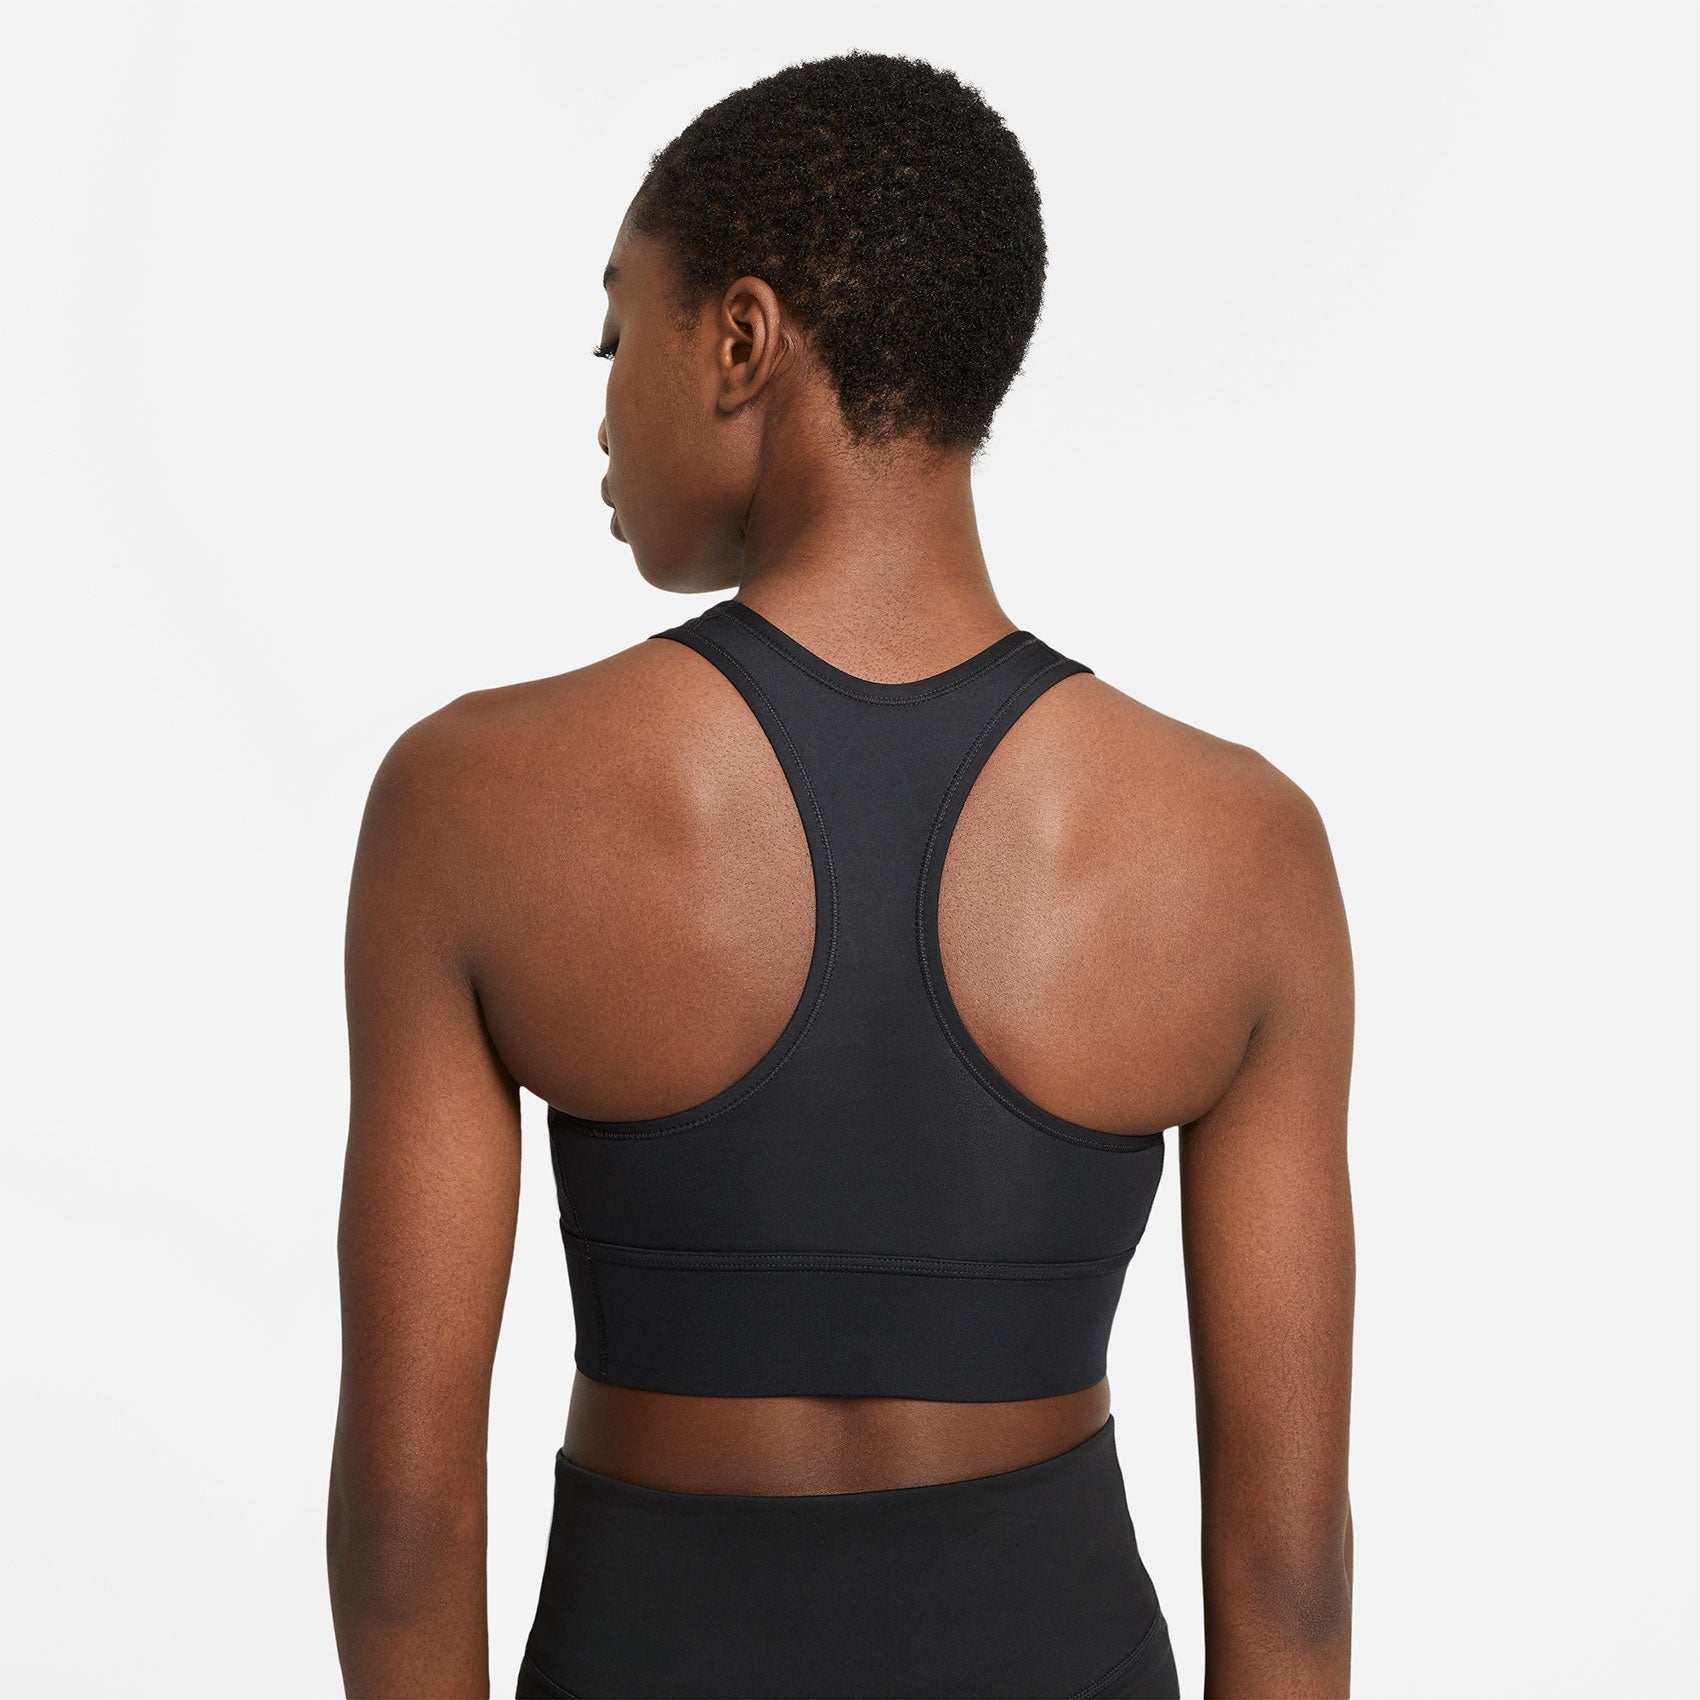 Nike Training Swoosh dri fit medium support sports bra tank in black